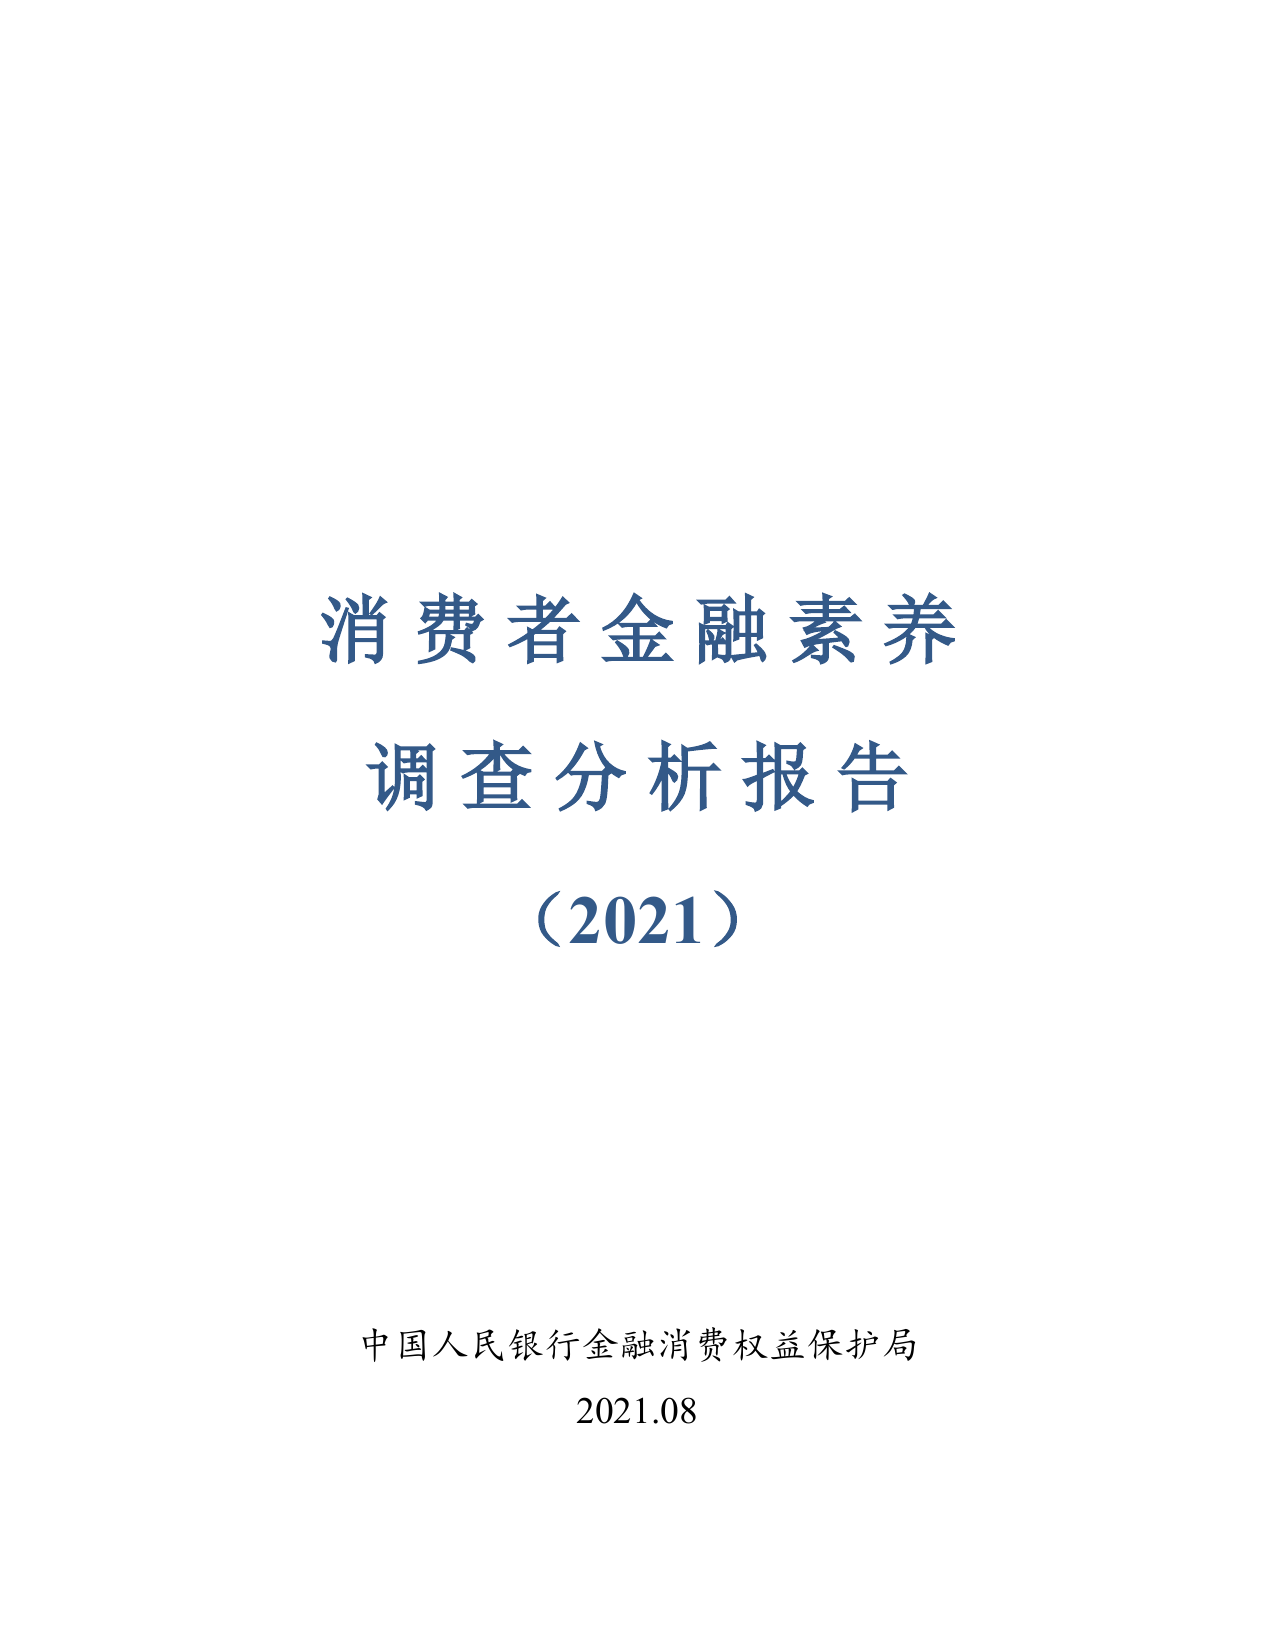 消费者金融素养调查分析报告（2021）-人民银行-2021.8-52页